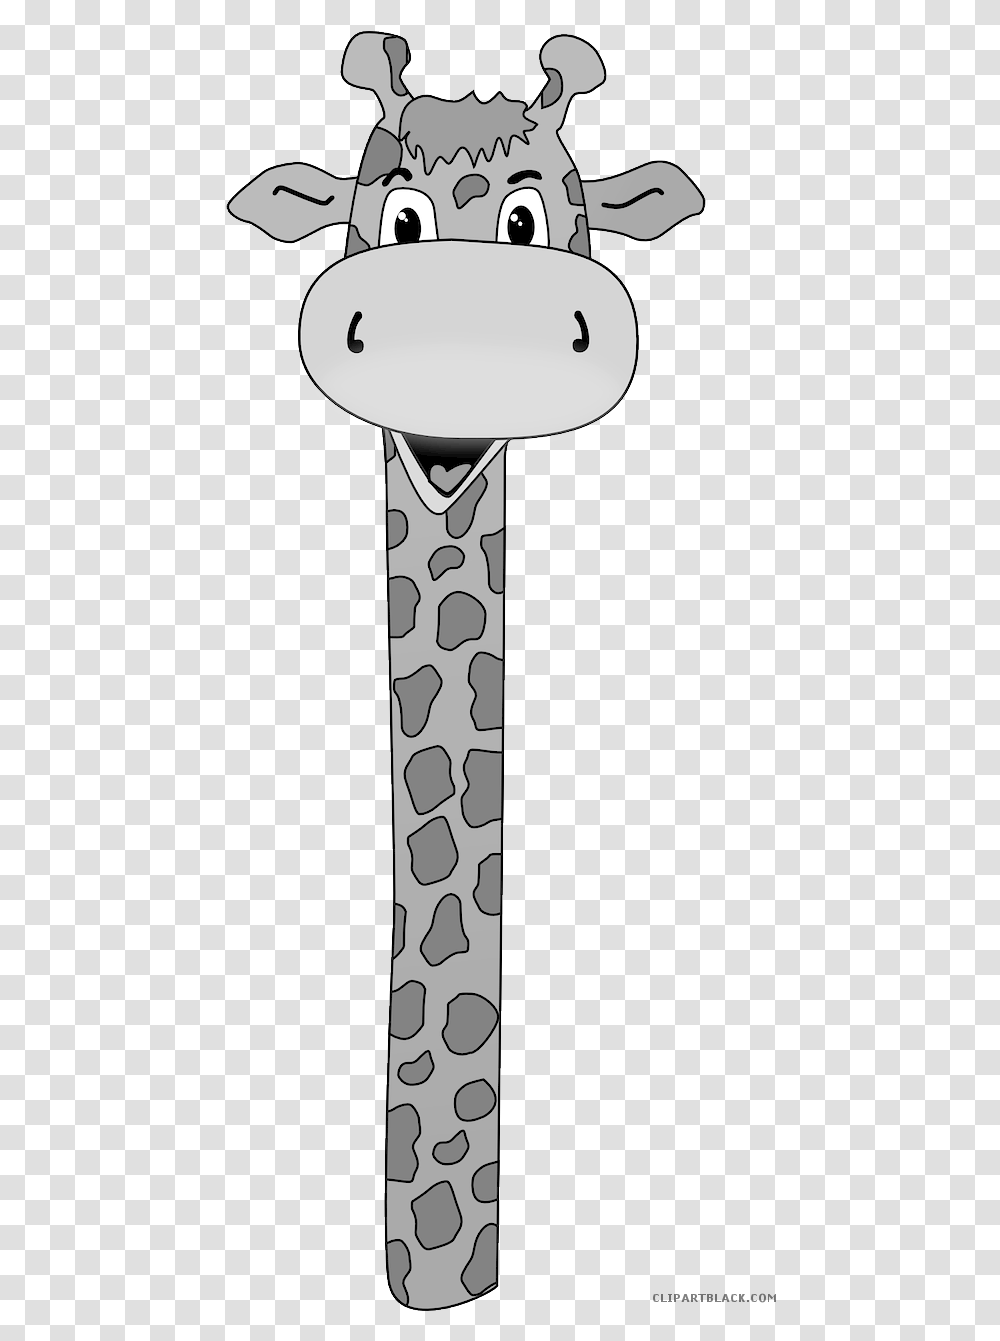 Giraffe Head Giraffe Long Neck Cartoon, Weapon, Weaponry, Blade, Cross Transparent Png